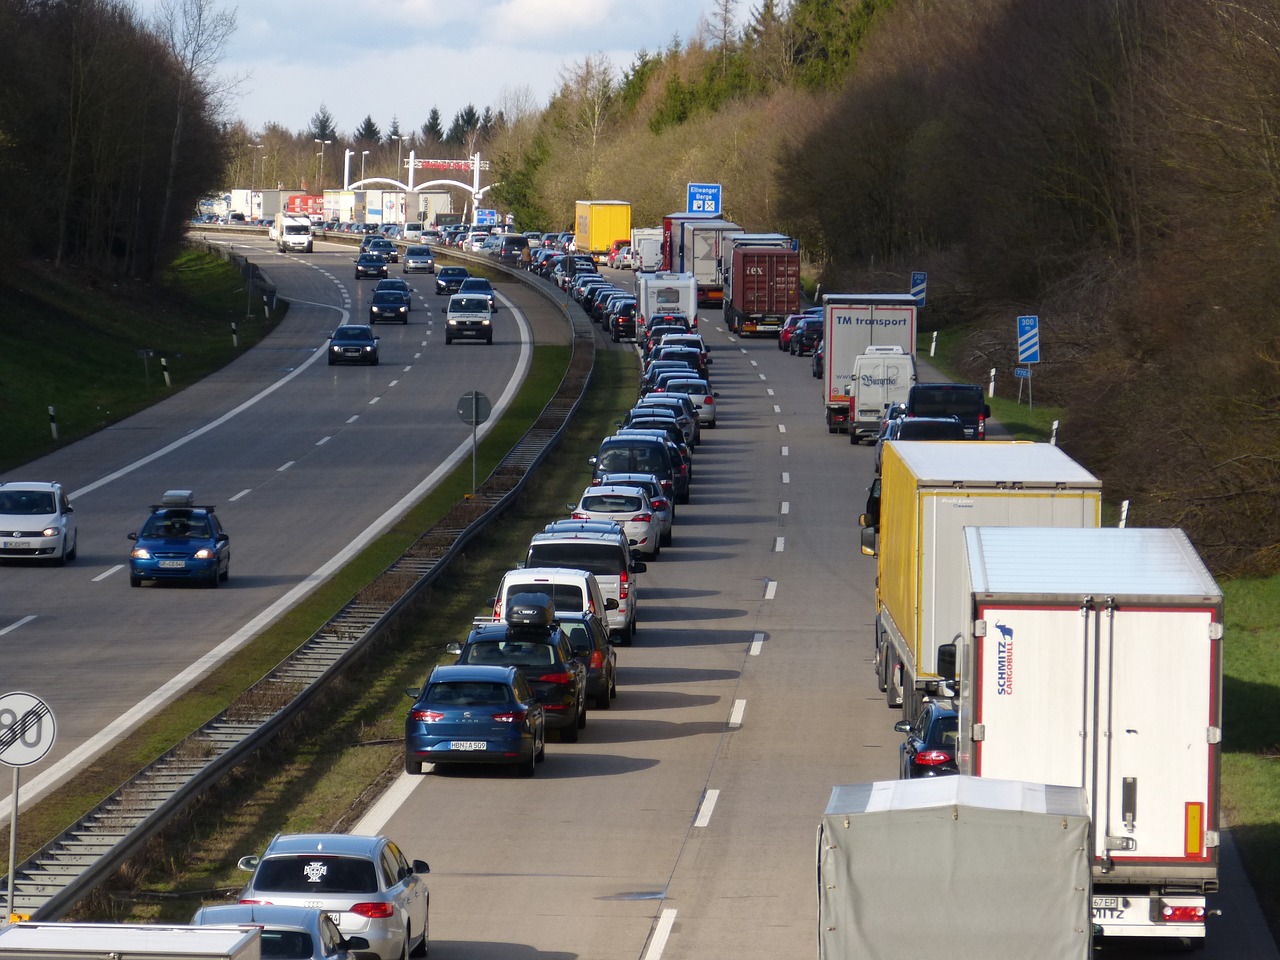 Τροχαία: Αυξημένα μέτρα για το τριήμερο της Πρωτομαγιάς – Απαγόρευση φορτηγών άνω των 3,5 τόνων